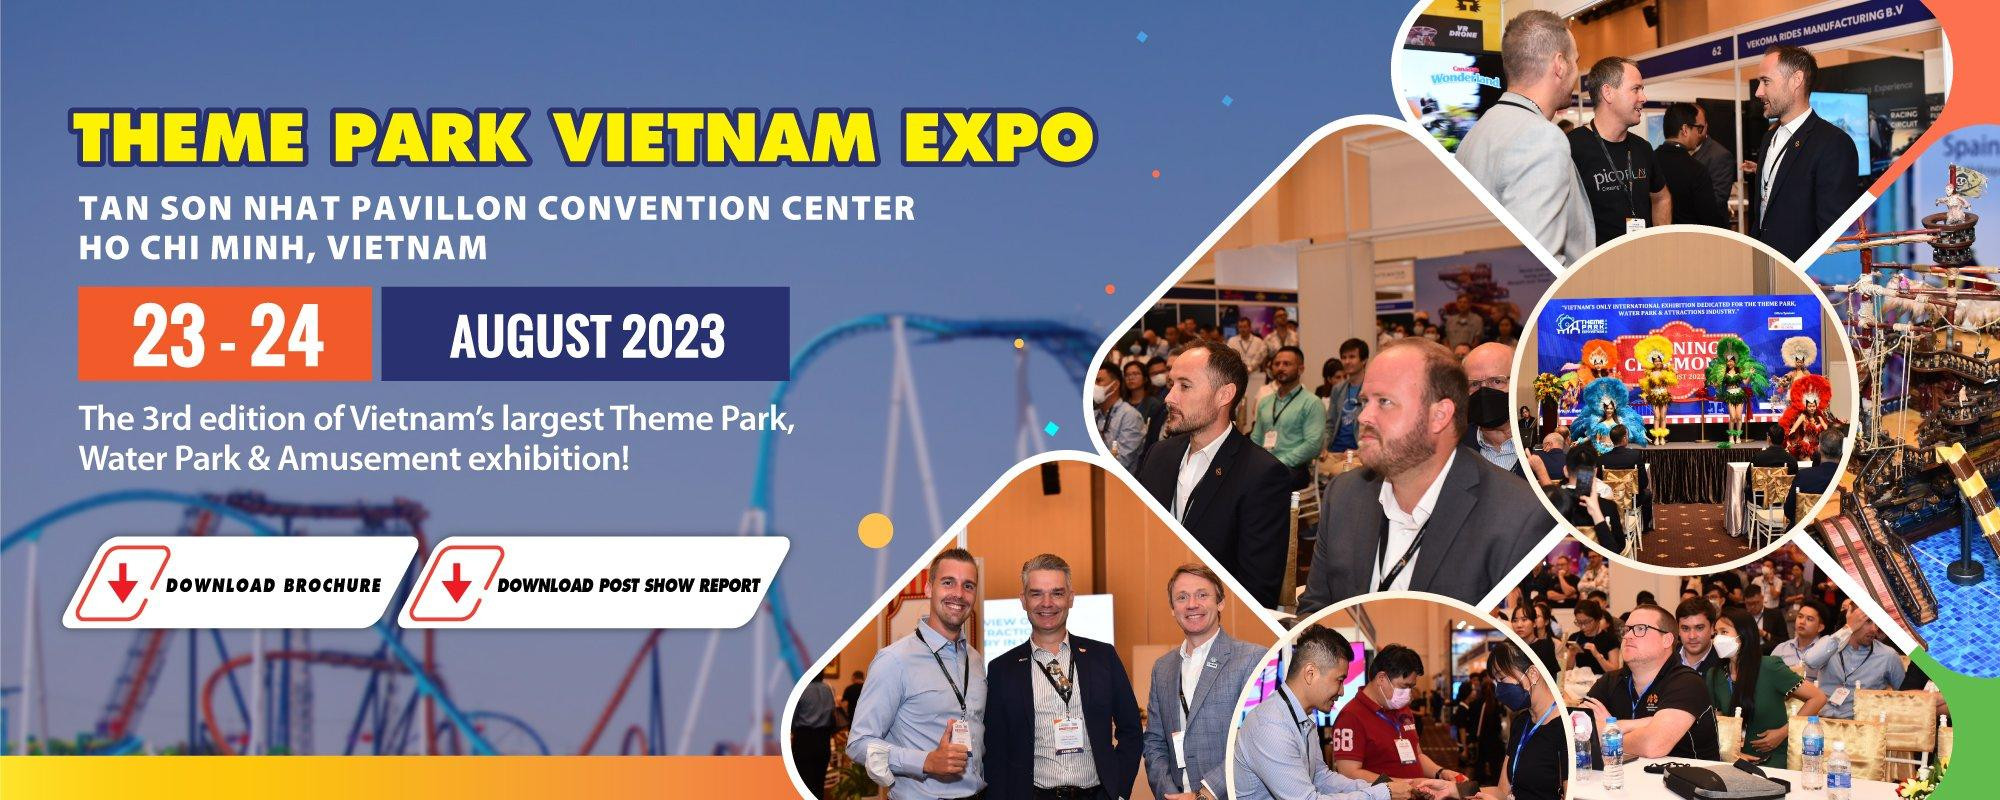 Theme Park Vietnam Expo 2023 - Thi công gian hàng triển lãm Theme Park Vietnam Expo